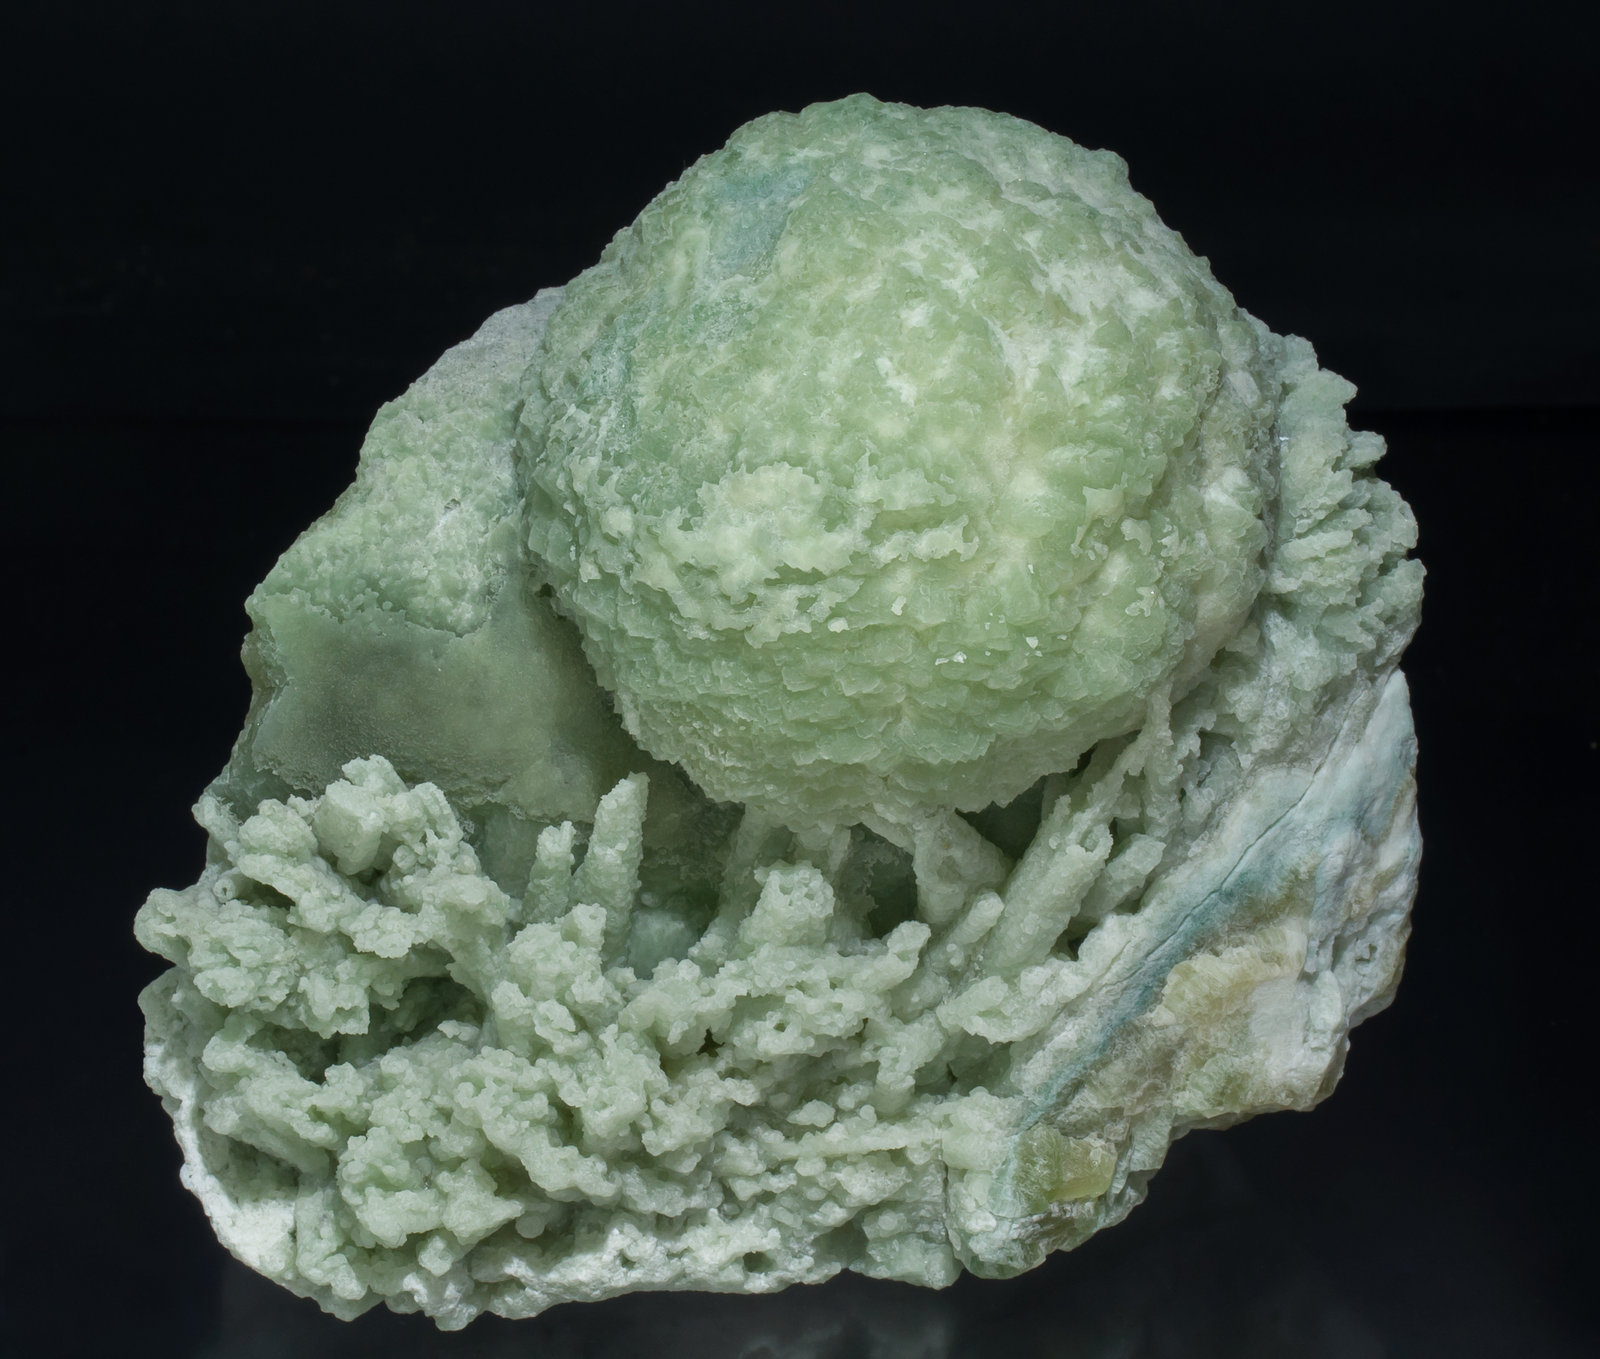 specimens/s_imagesAB1/Aragonite_Sr-SF48AB1f.jpg